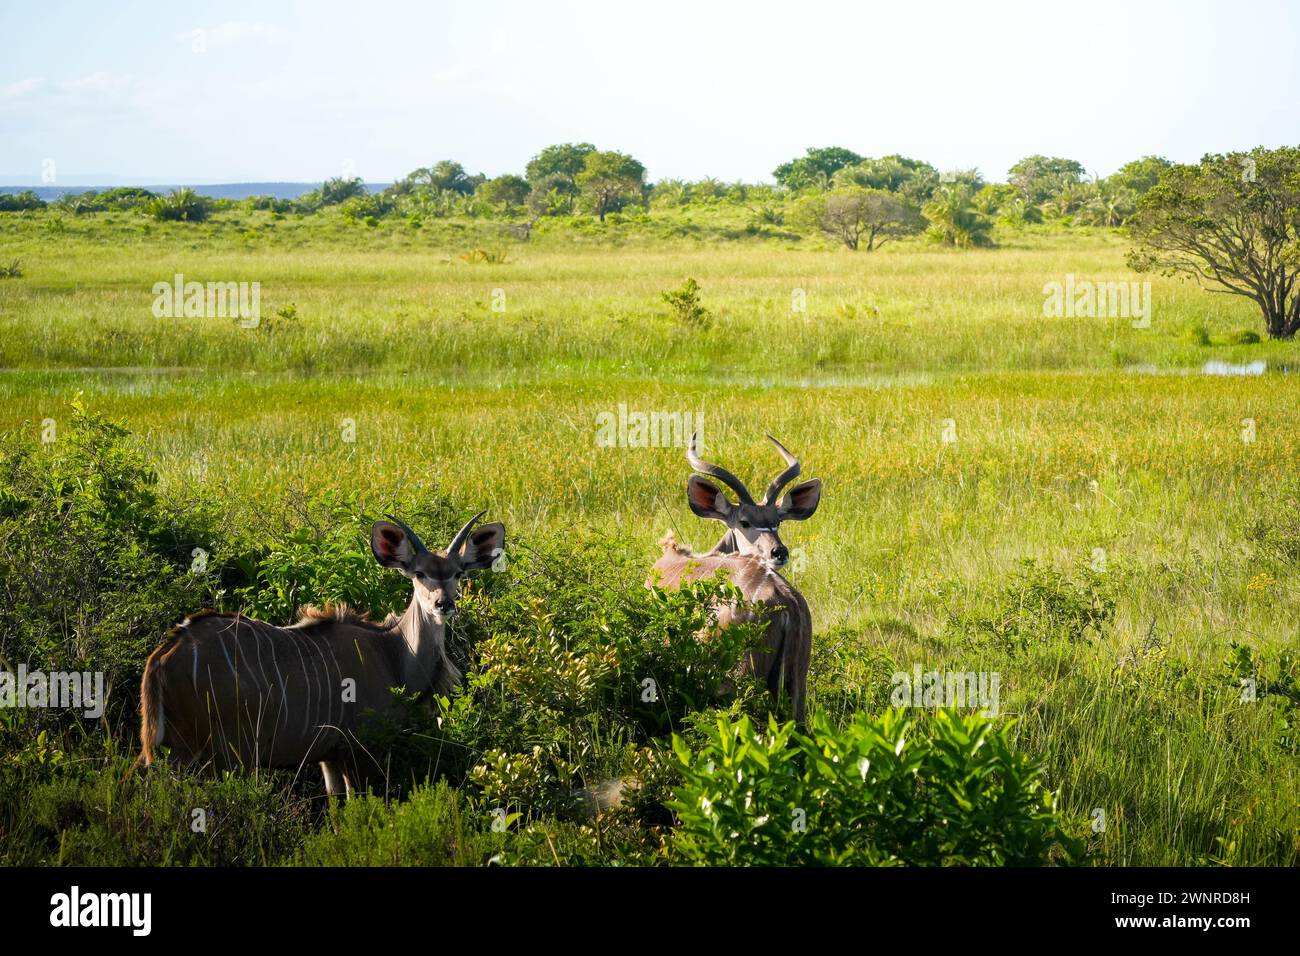 Un paio di antilopi kudu con corna a spirale si ergono in mezzo a una vivace vegetazione in una savana. La scena cattura la tranquillità di questi maestosi c Foto Stock